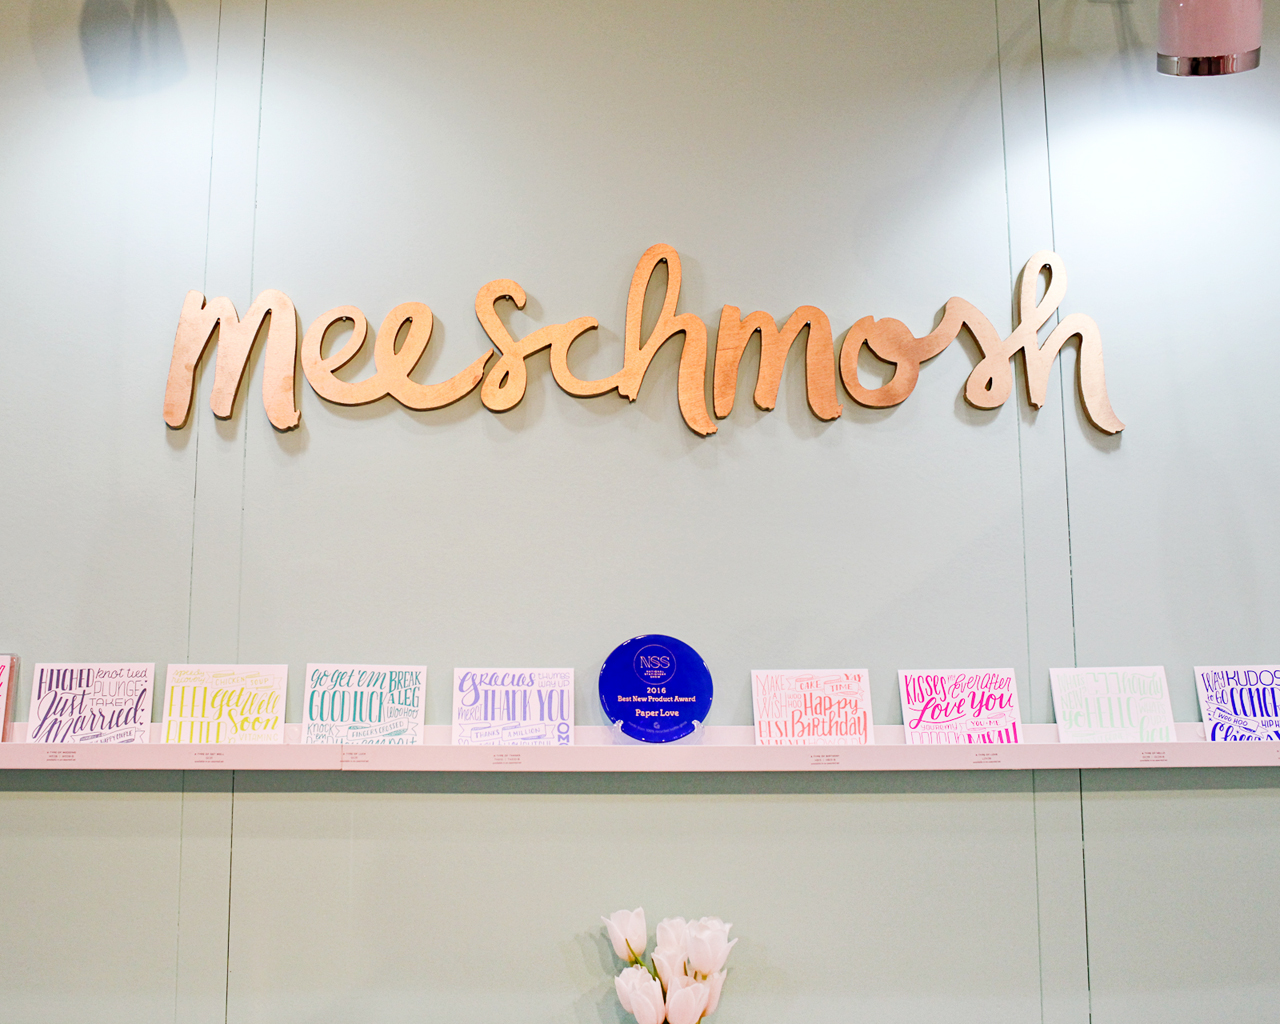 NSS 2016: Meeschmosh / Oh So Beautiful Paper